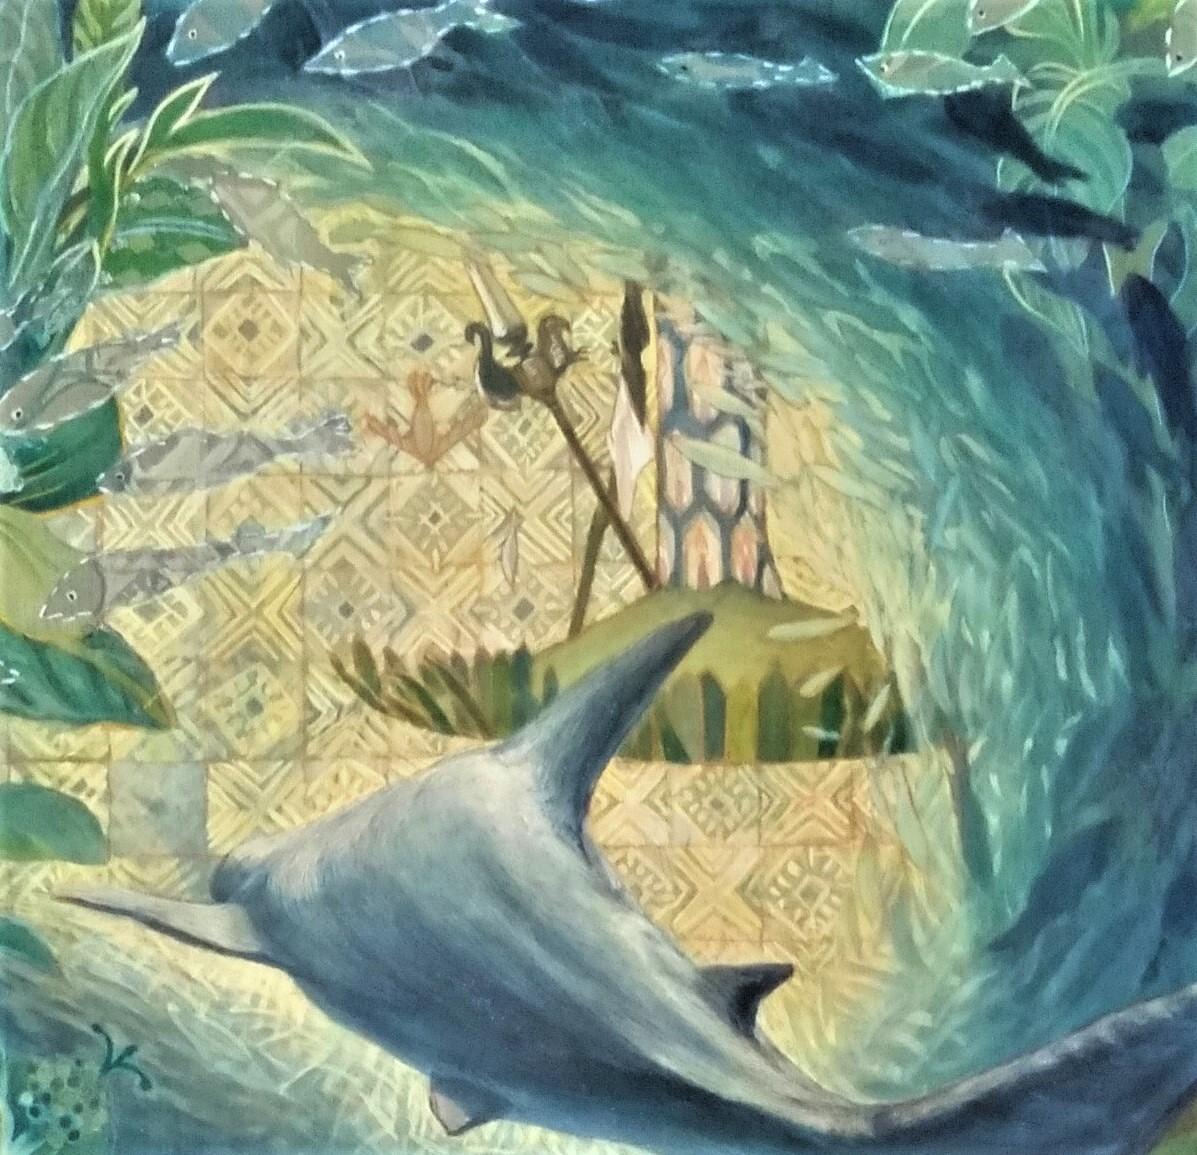 « In a Forest of Fishes », peinture japonaise de paysage marin aux pigments de soie sur la paix de la mer  - Contemporain Painting par Maki Kuchida